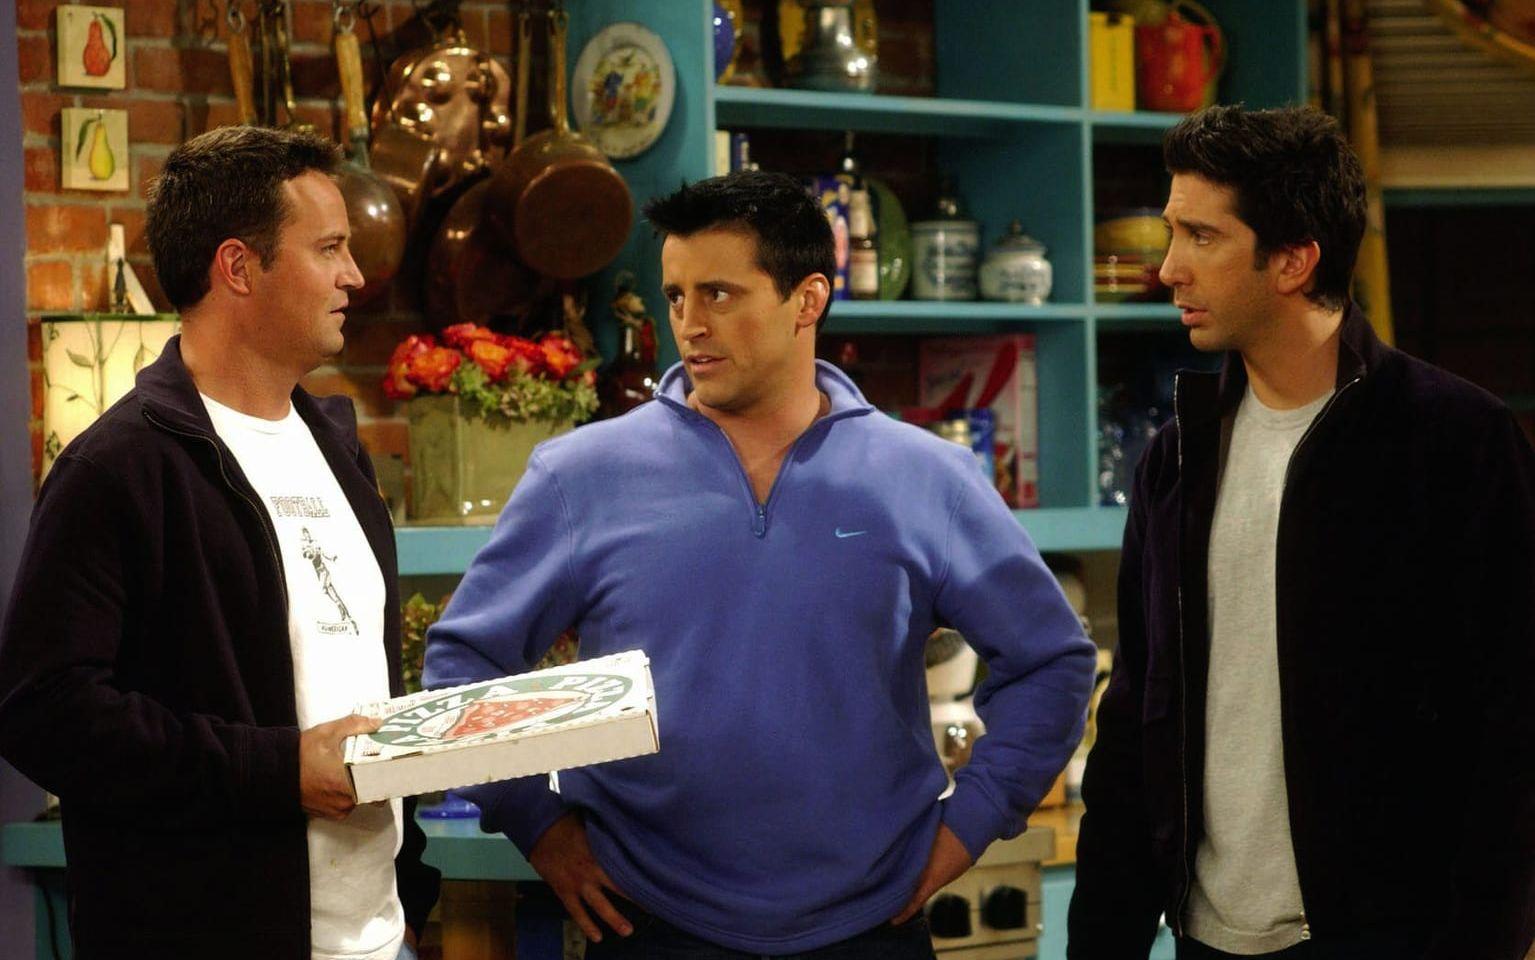 Stillbild från ett avsnitt av ”Vänner”. Karaktärerna Joey, Chandler och Ross i köket till lägenheten där det mesta av serien utspelade sig.